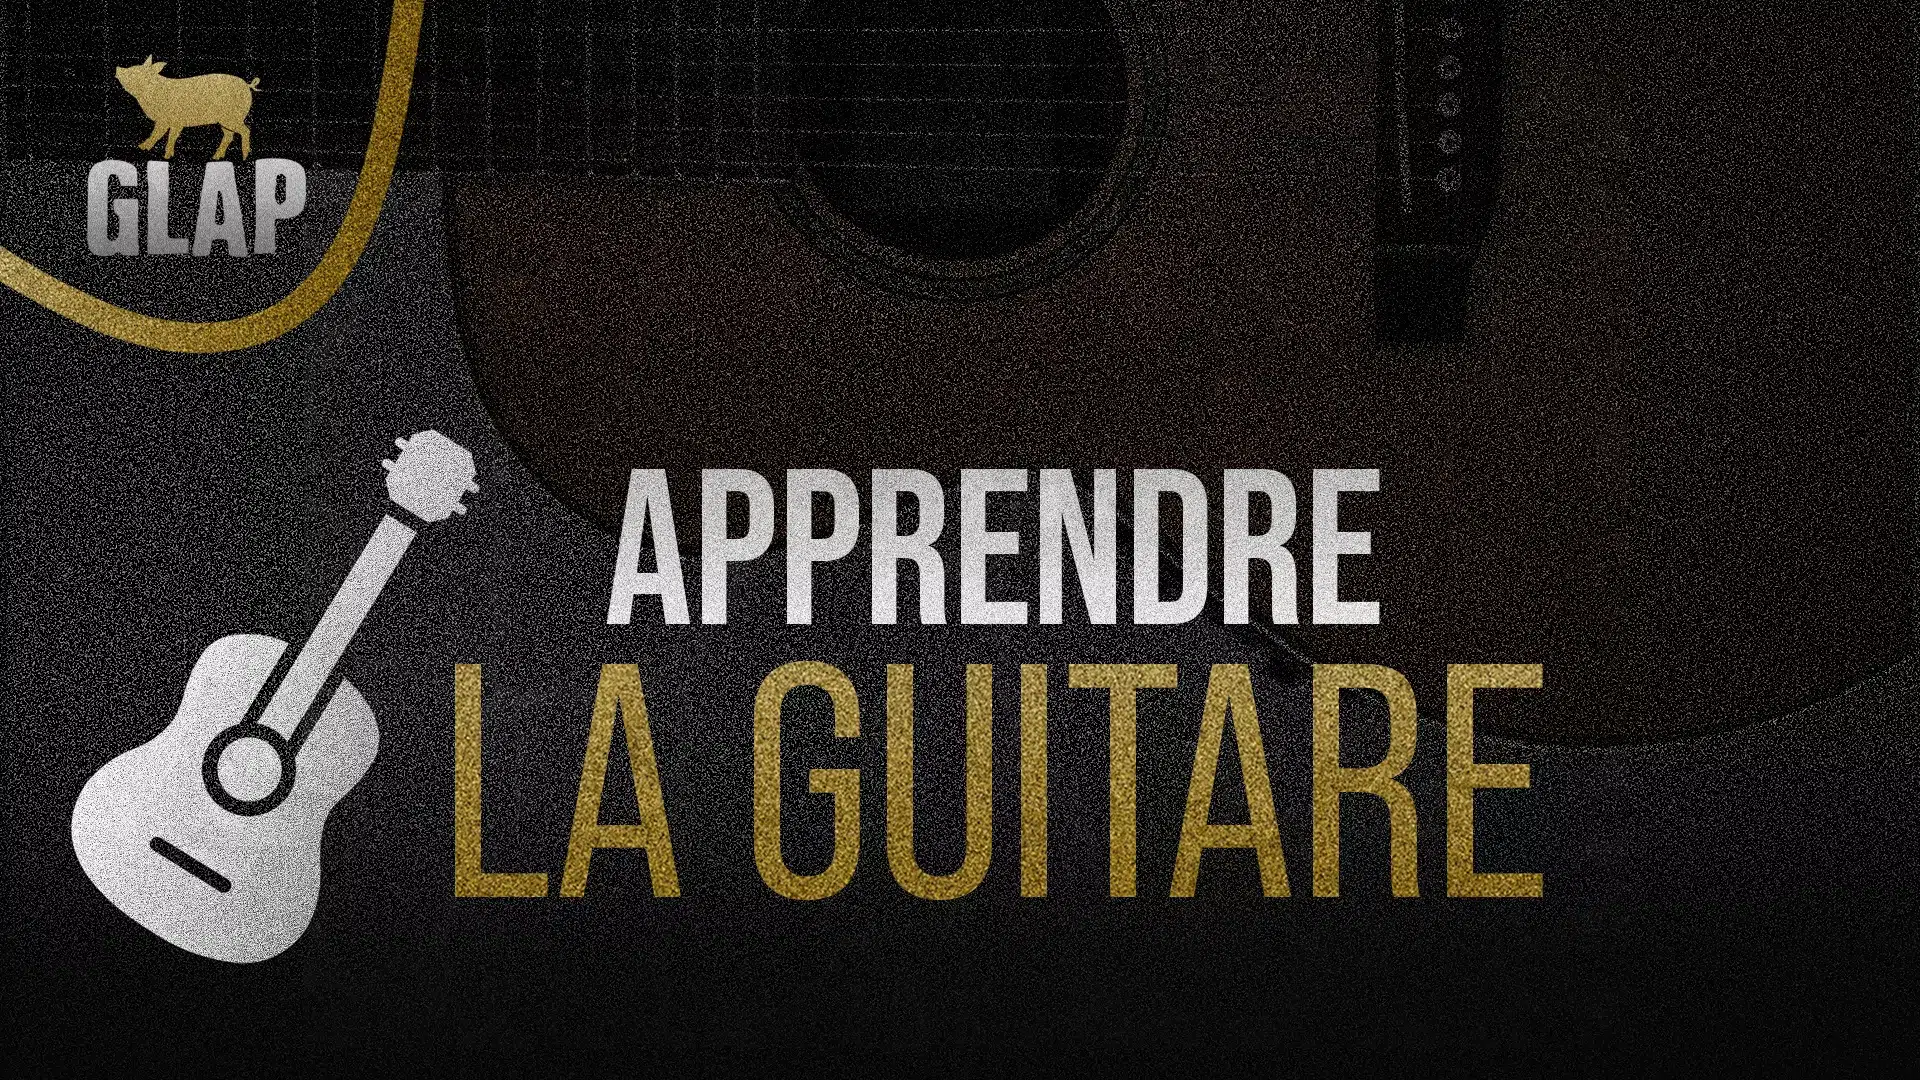 apprendre-a-jouer-de-la-guitare-cours-de-guitare-debutant-ateliers-creatifs-et-cours-de-musique